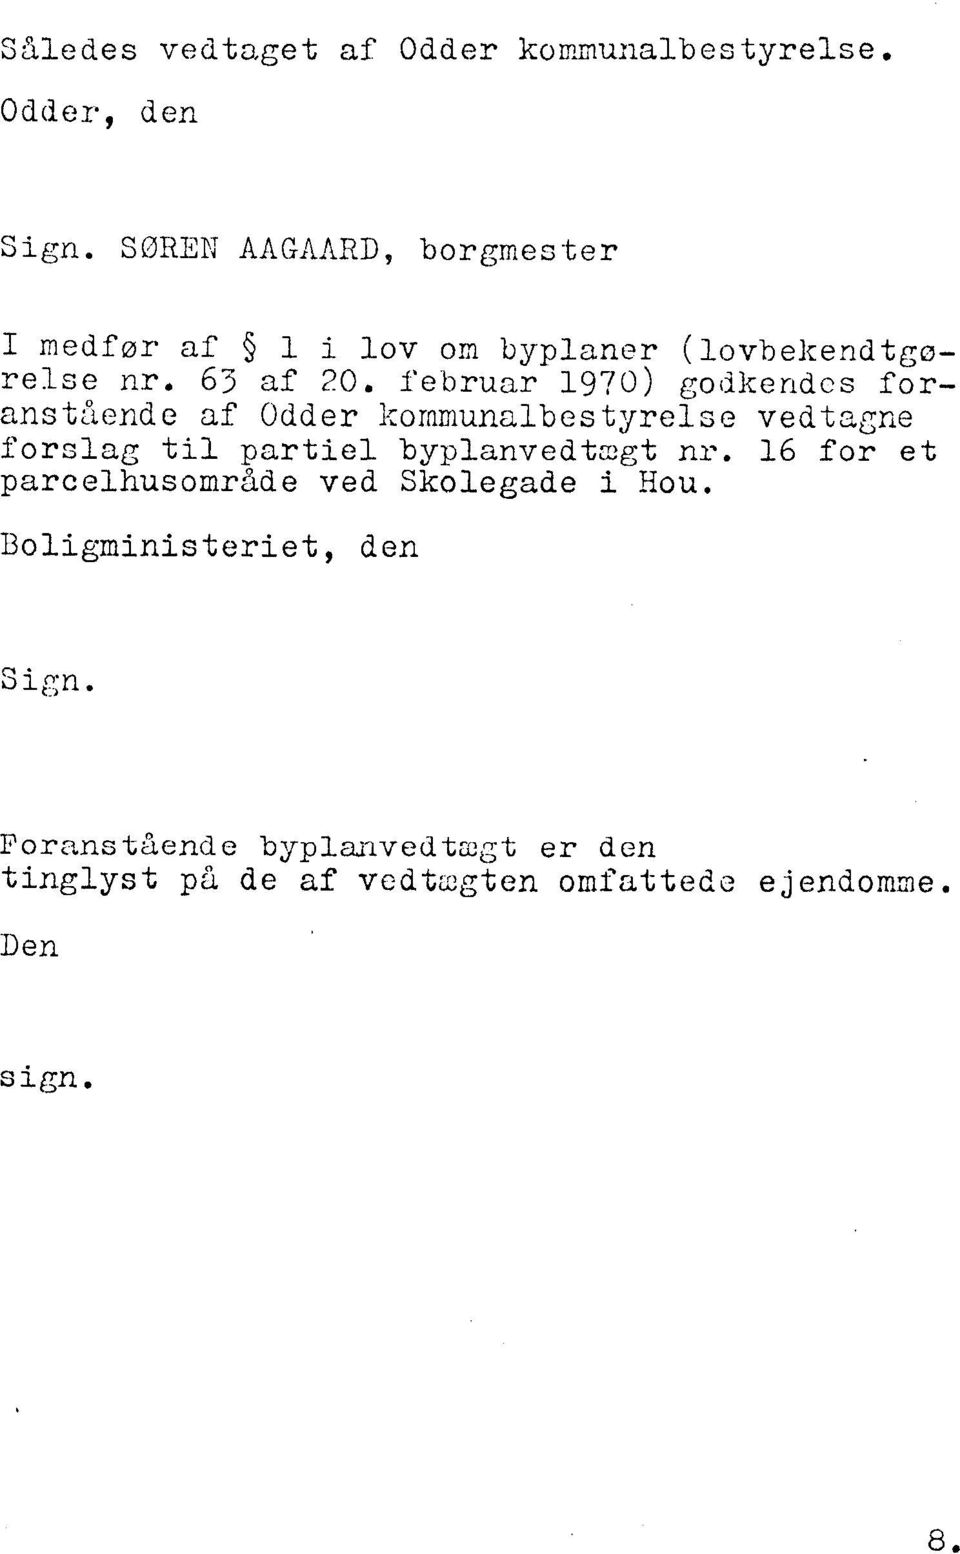 februar 1970) godlrendcs foransthnde af Odder Bornmunalbestyrel~e vedtagne forslag til partiel byplanvedtzgt ni-.